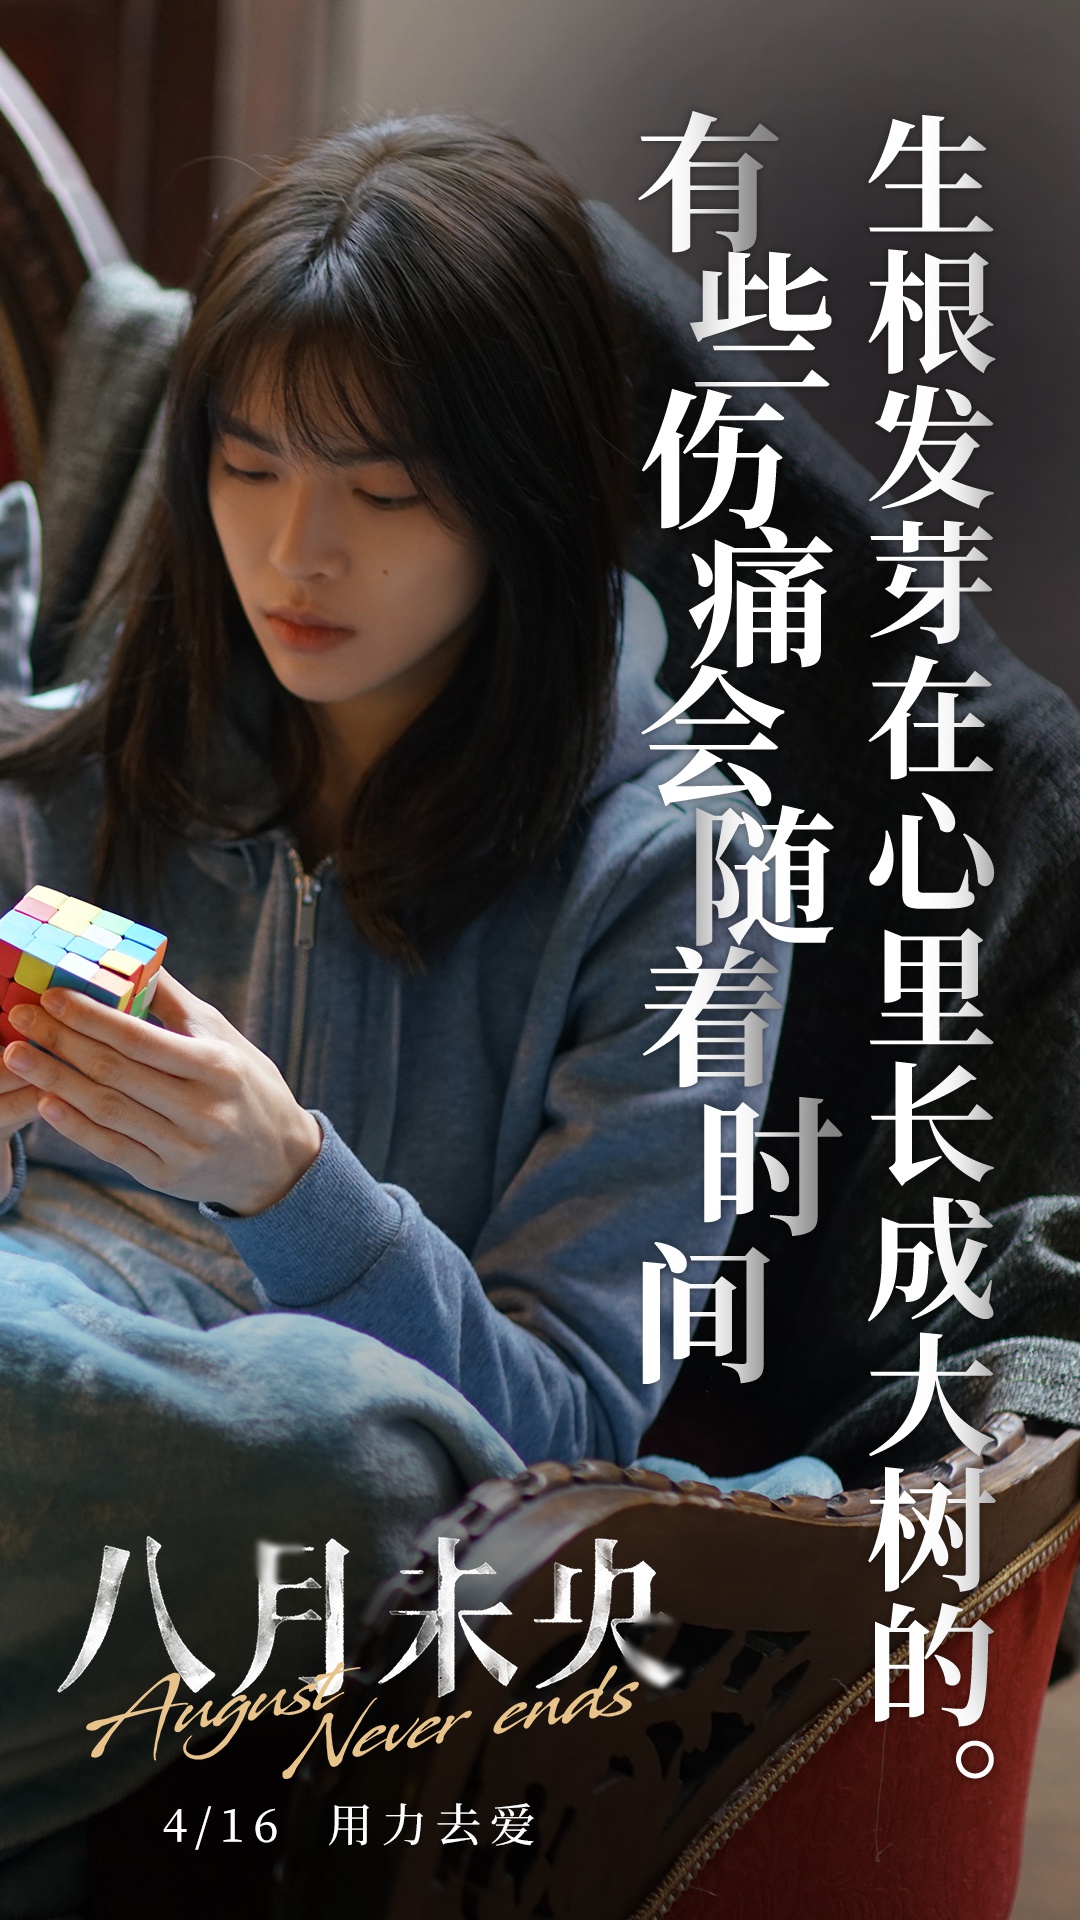 电影《八月未央》今日发布"残酷爱情"版台词海报